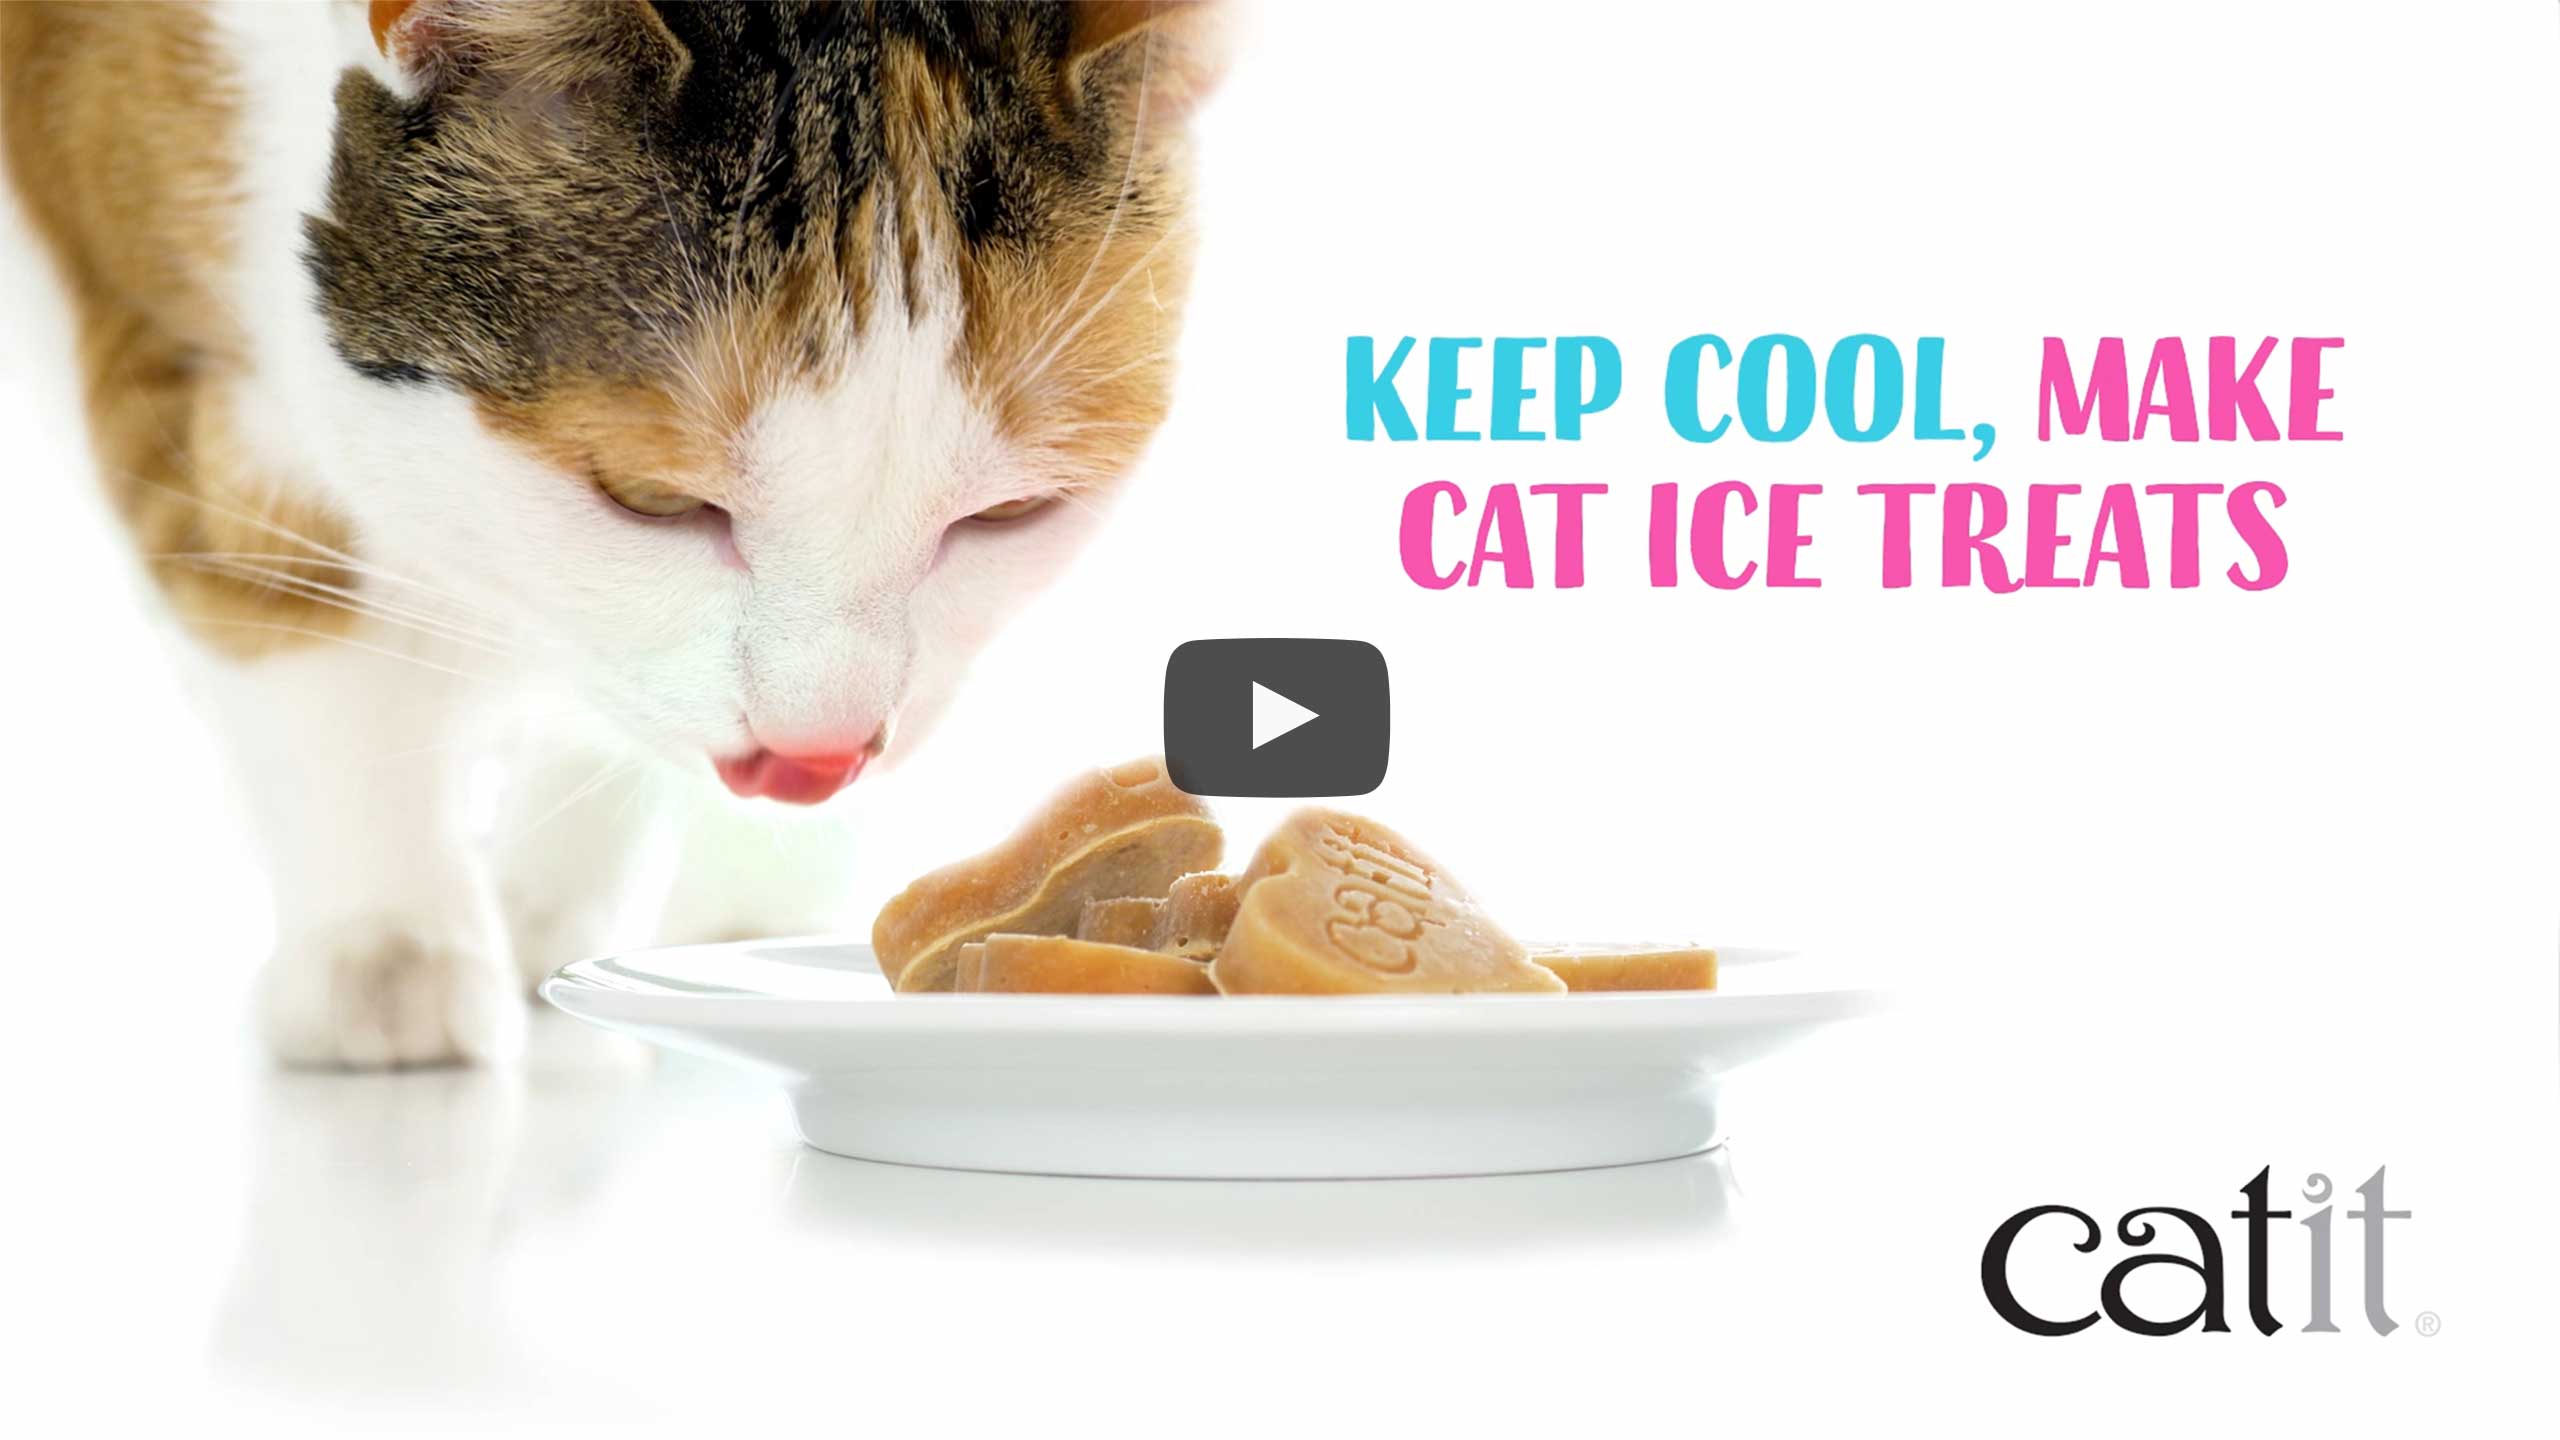 Préparez de délicieuses friandises glacées saines et hydratantes pour chats avec notre moule à glaçons en silicone en forme de cœur.